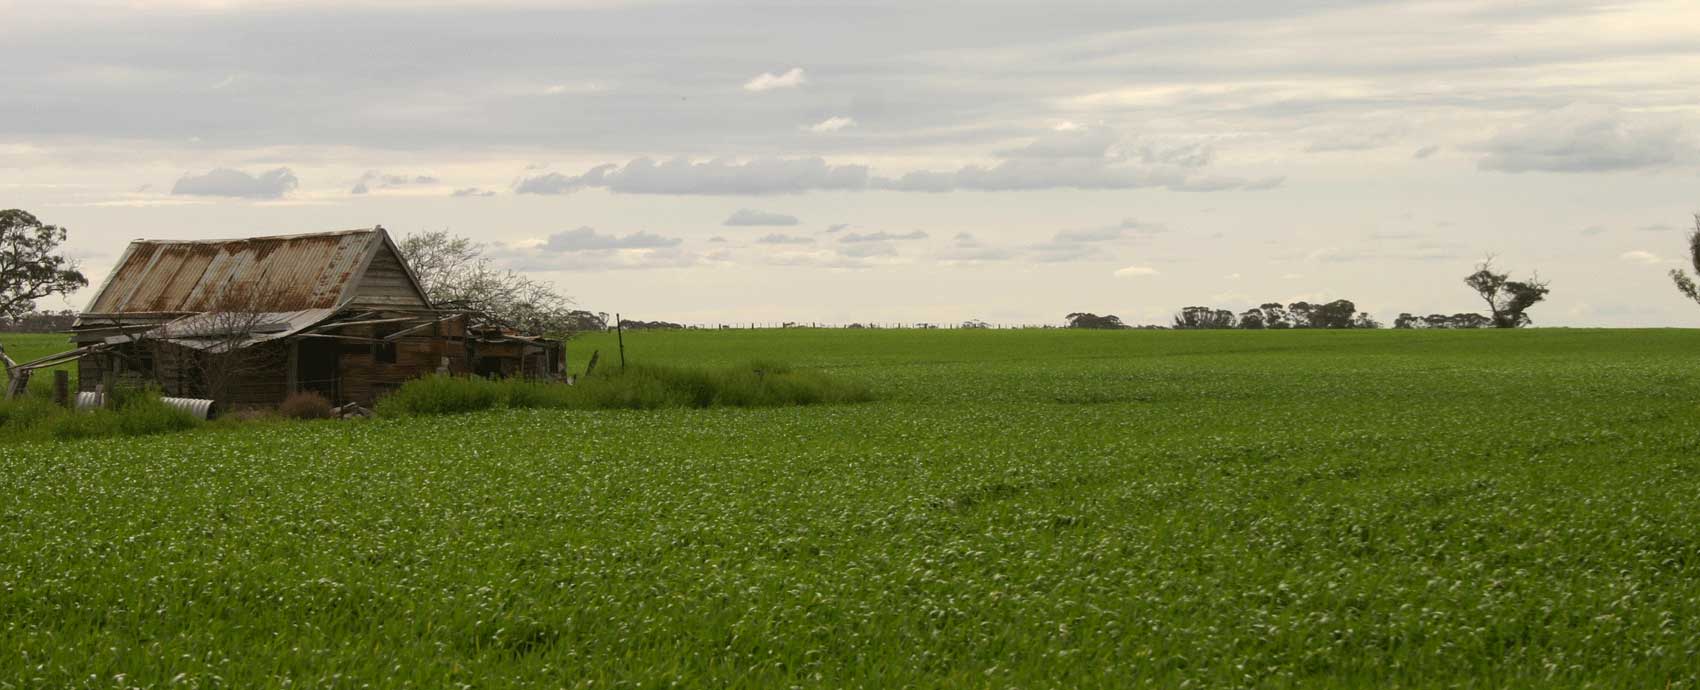 Wheat shed in Buloke Shire